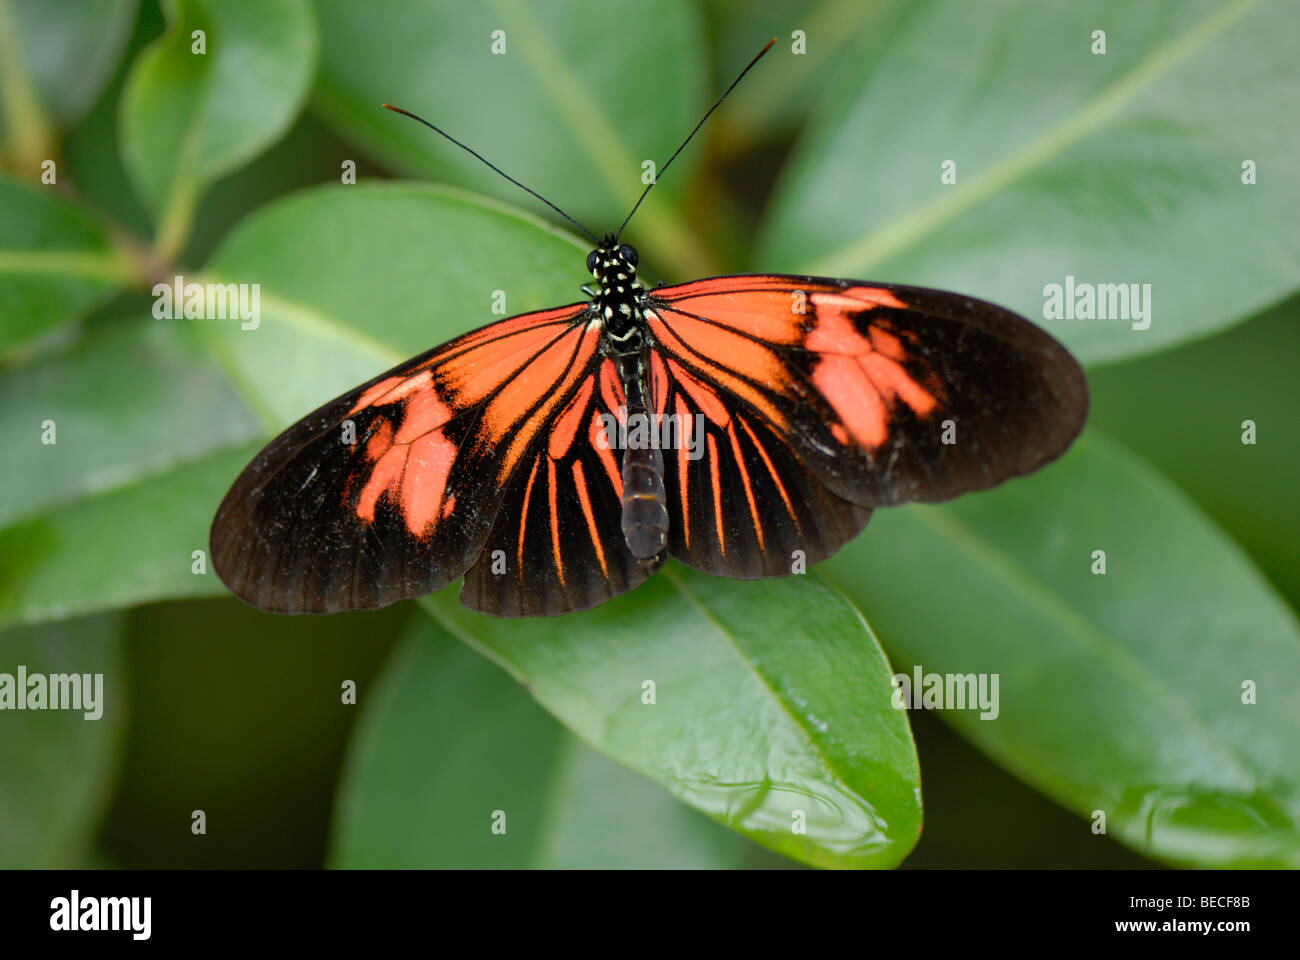 Postbote Schmetterling (Heliconius Melpomene), ursprünglich aus Südamerika, Botanischer Garten München-Nymphenburg Stockfoto